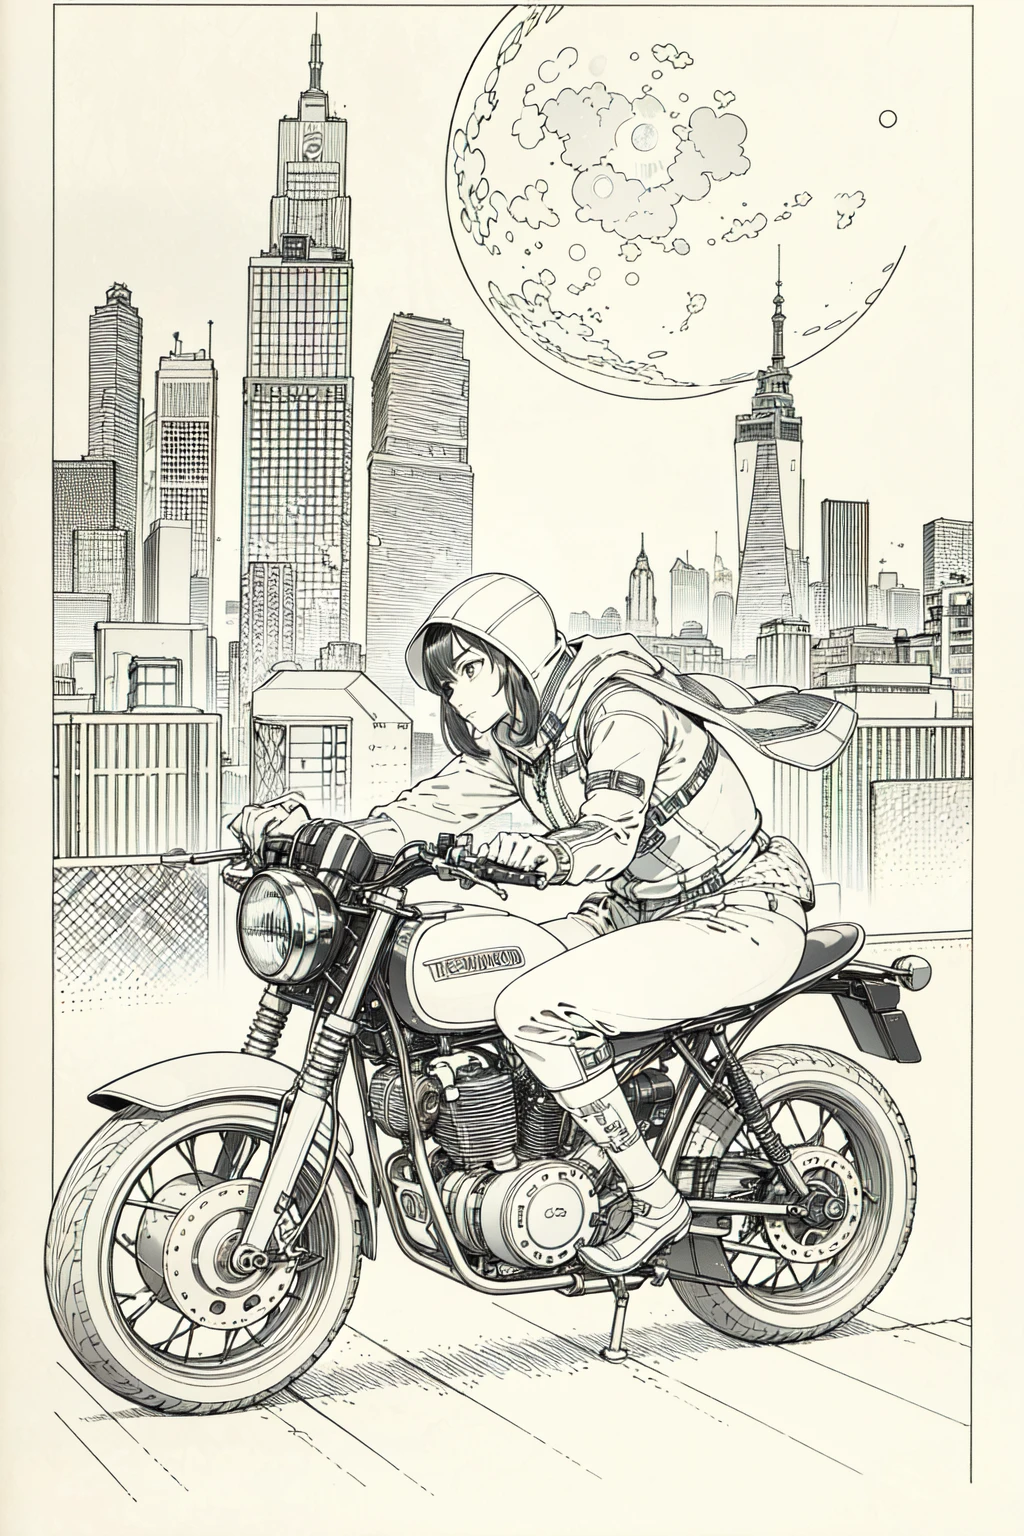 Лучшее качество, шедевр, Фото, 4k, Фотоrealistic, очень подробный,
1 девушка катается на мотоцикле, техническая одежда, Киберпанк-город, Один, футуристический, огромная луна на заднем плане, черное и белое, автор Акира Торияма, крупный план,
